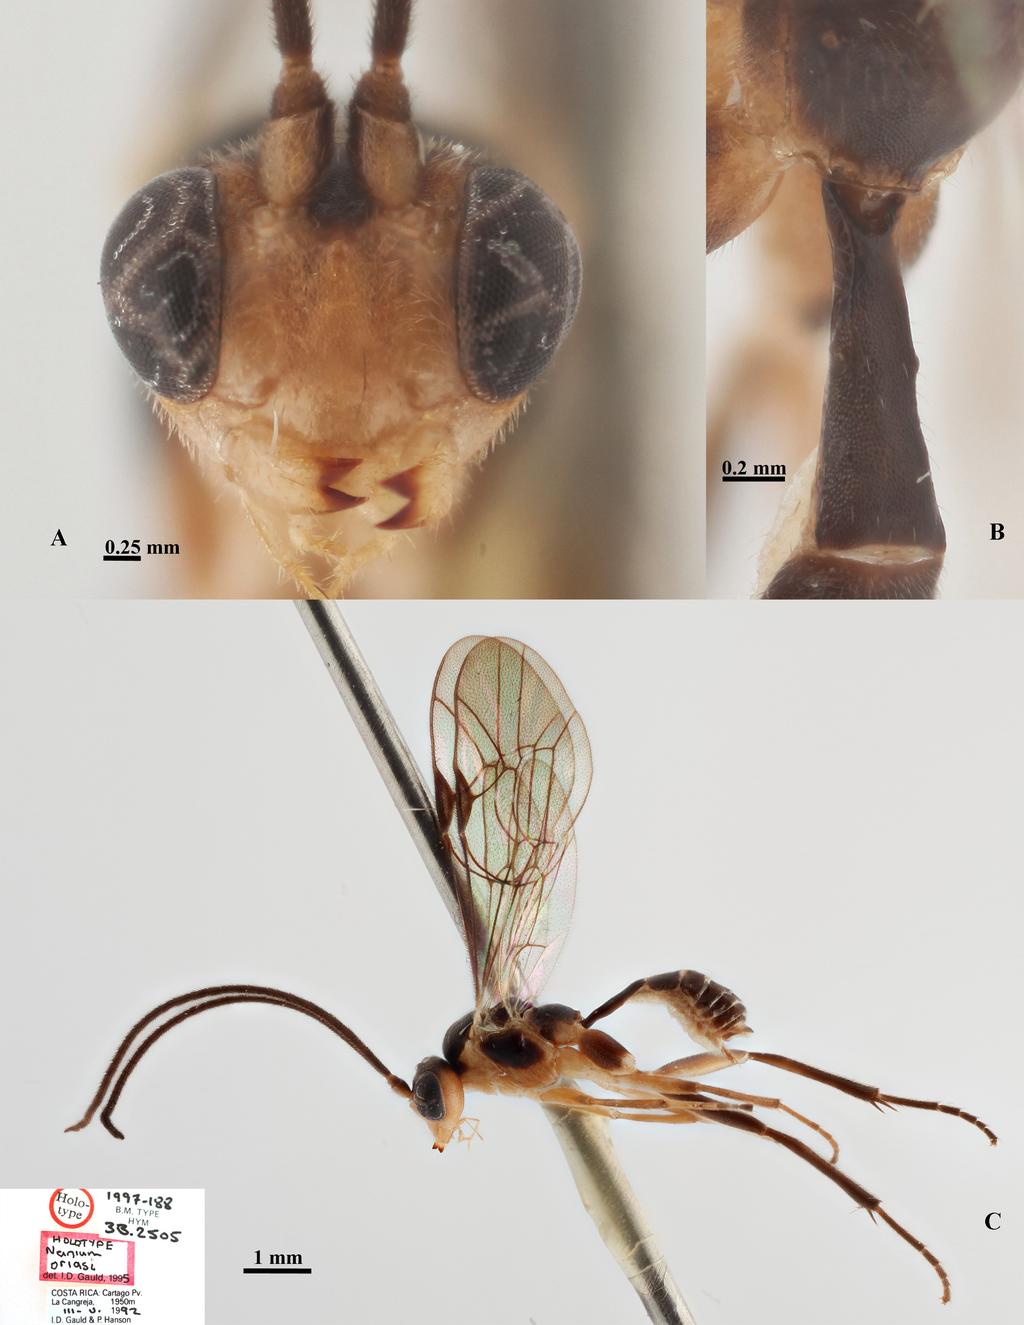 RESHCHIKOV A. et al., Neotropical Nanium (Hymenoptera: Ichneumonidae) Fig. 7.